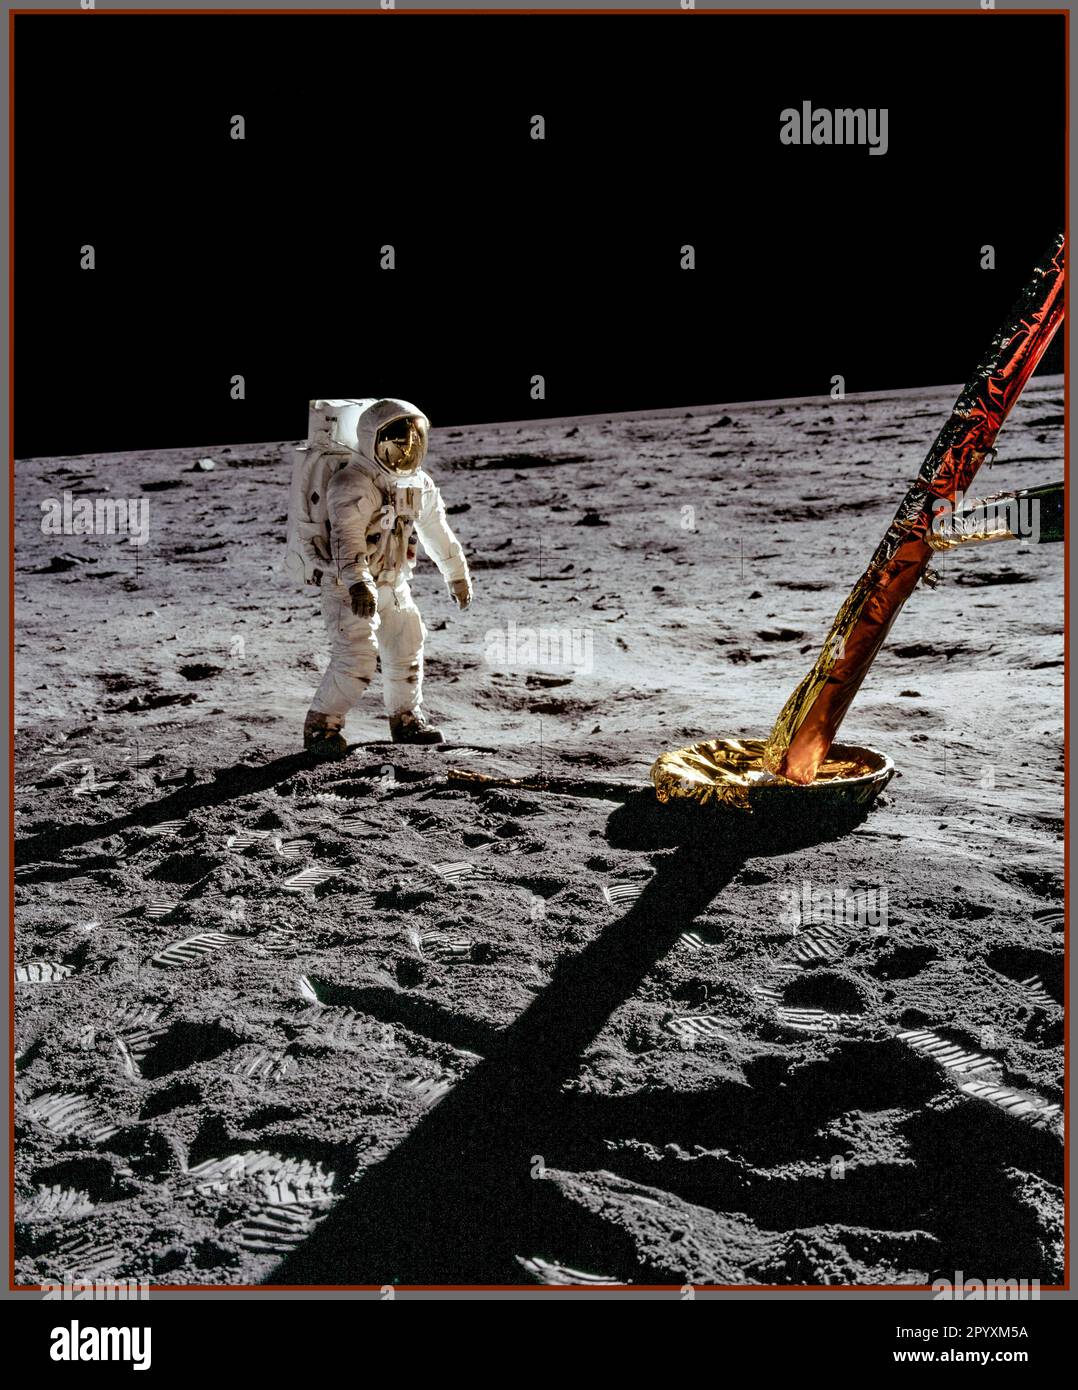 Buzz Aldrin Man on the Moon photographié sur un film Kodak EKTACHROME couché spécial de Neil Armstrong, debout juste au-delà de la jambe nord. Notez les taches de poussière distinctives sur les jambes de Buzz. La photo montre également les sillons dans la zone d'échantillonnage en vrac et la zone à gauche du marchepied qui montre des signes inimmanquables de balayage par l'échappement du moteur en descente. Ulli Lotzmann note en détail une image réfléchie du radar de rendez-vous. Date 20 juillet 1969 Banque D'Images